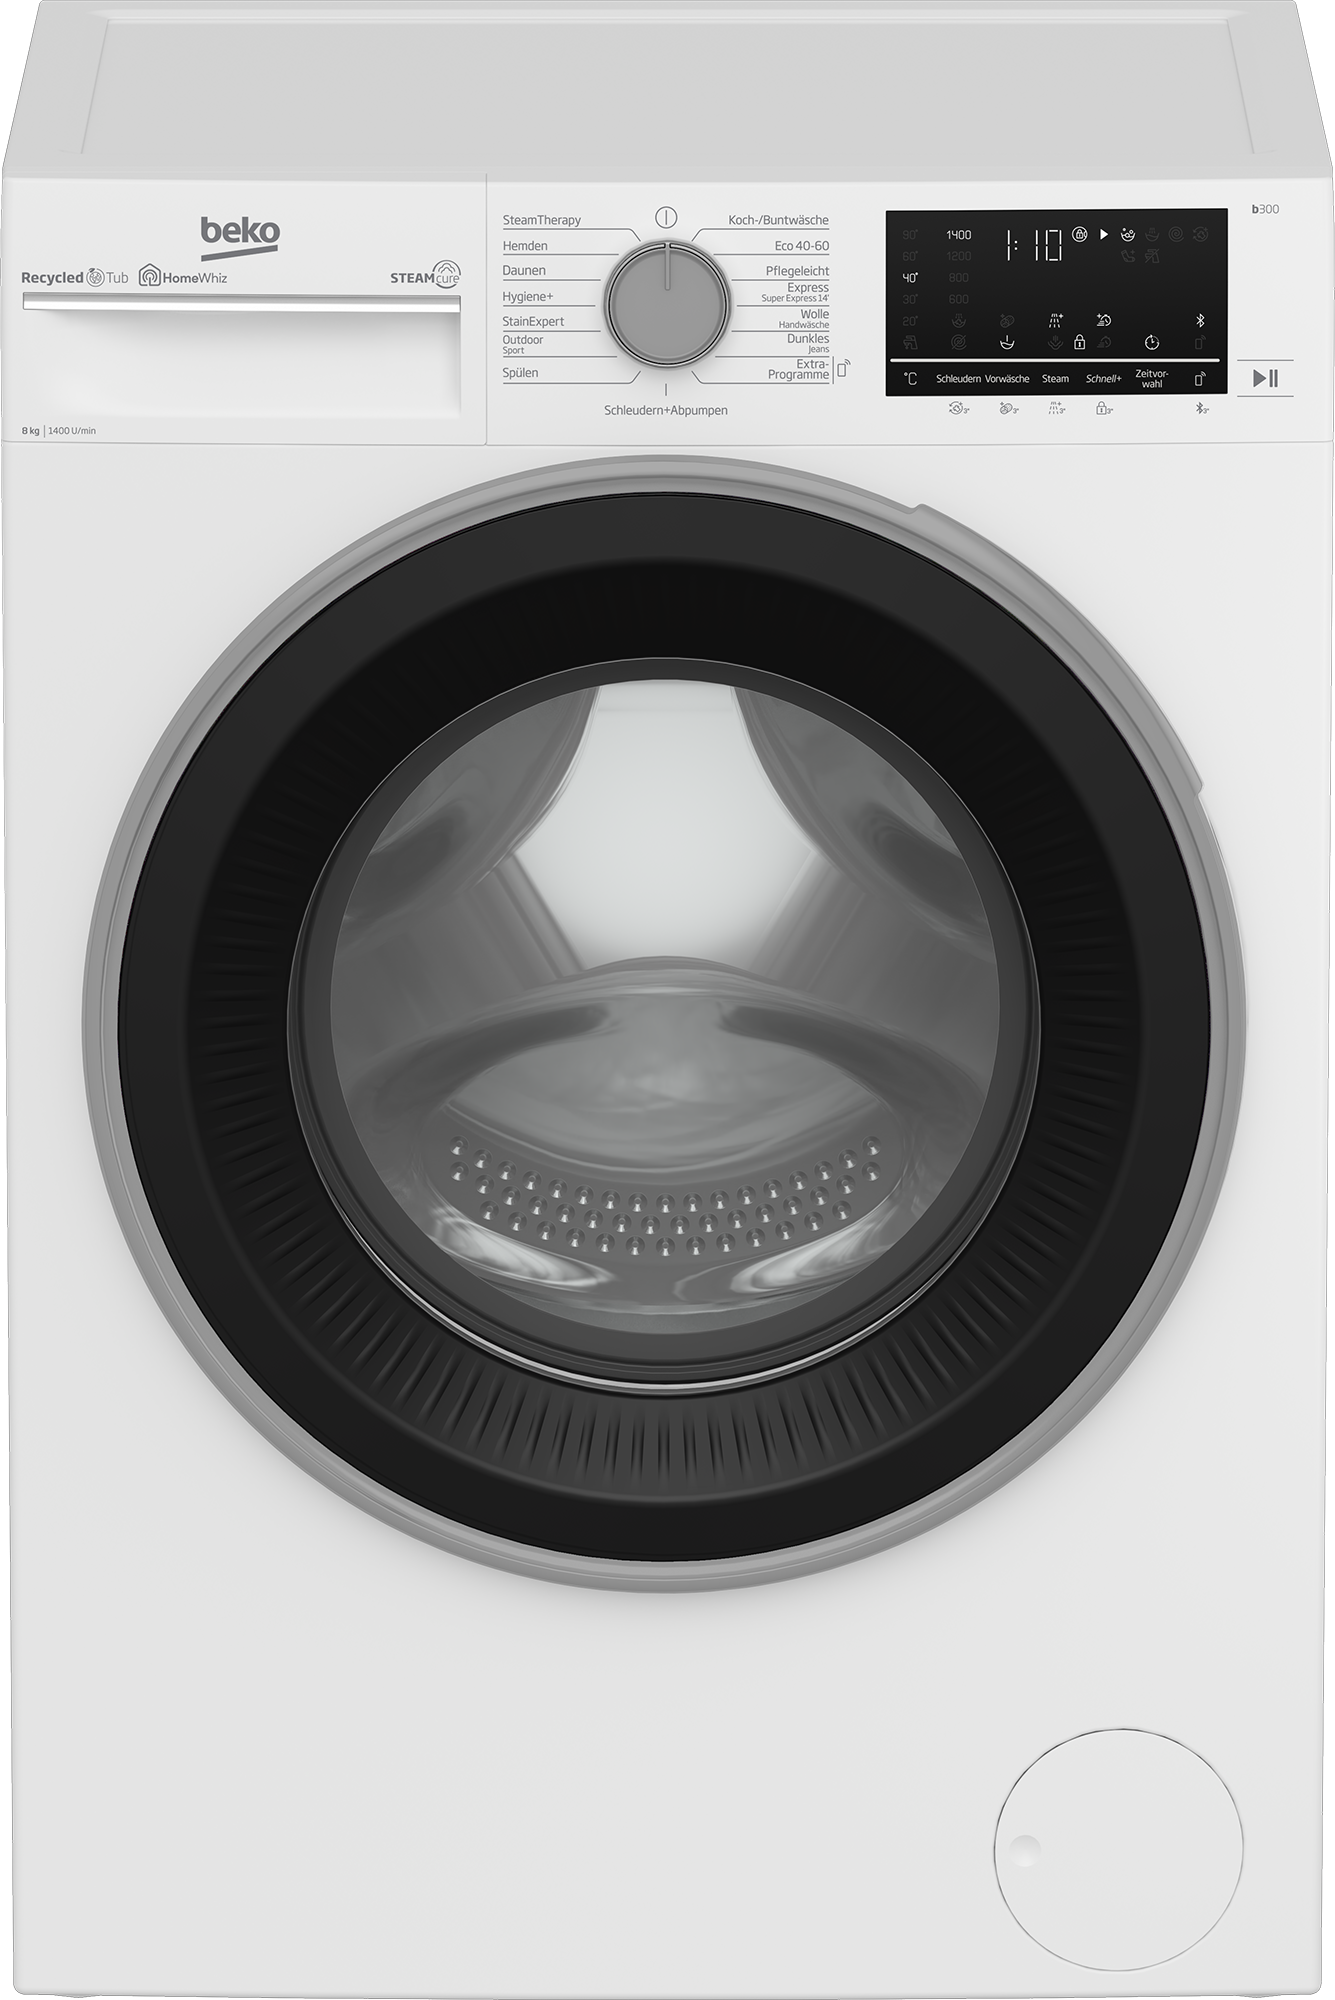 kg, 8 b300, 99% - B3WFU58415W1, allergenfrei Waschmaschine, auf BEKO 1400 U/min, | Raten SteamCure BAUR